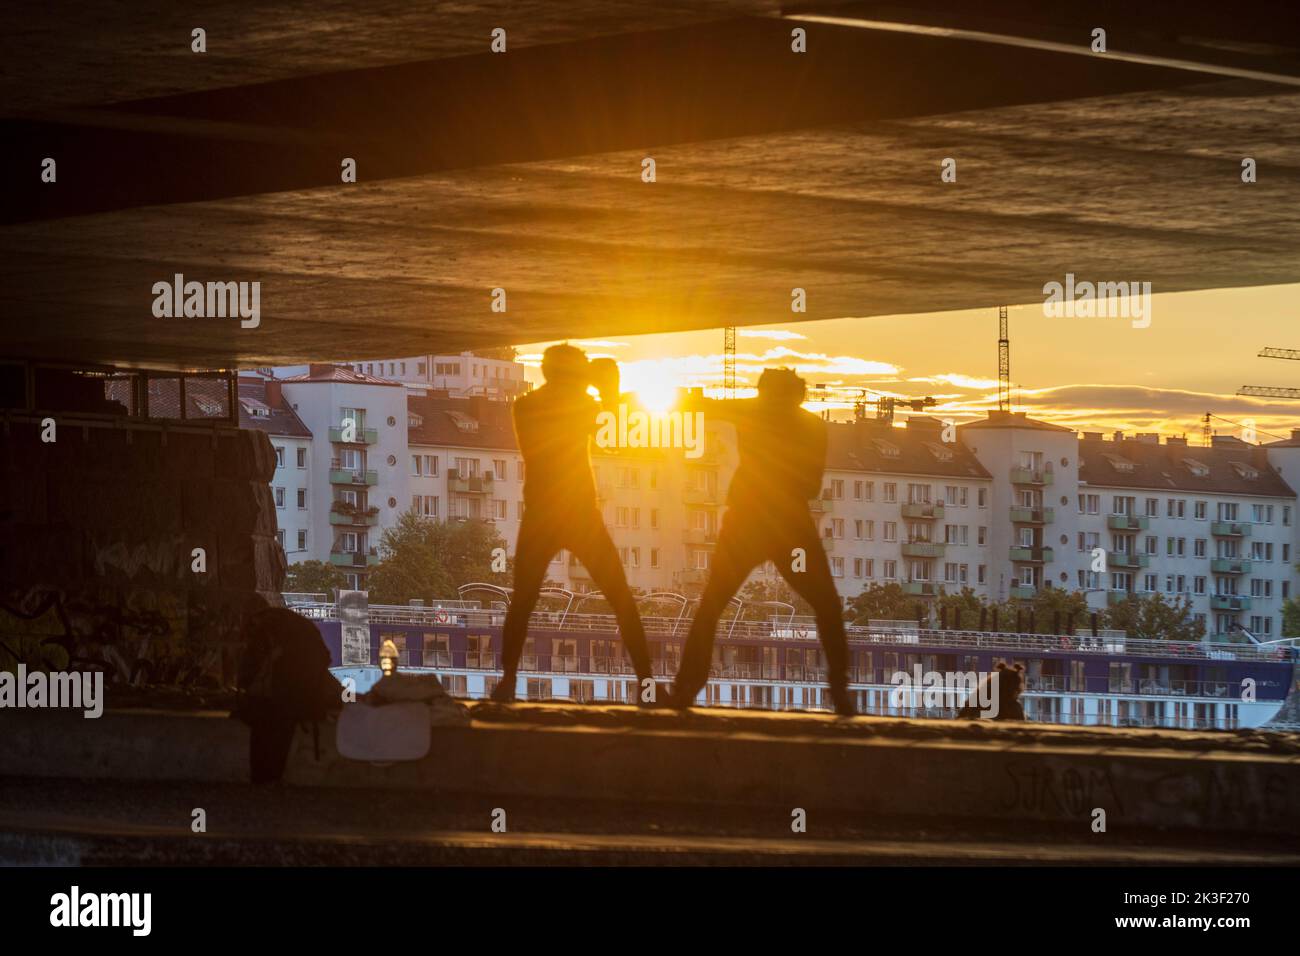 Wien, Vienne: 2 hommes sport de boxe sous le pont Reichsbrücke, coucher de soleil, bateau de croisière en 22. Donaustadt, Wien, Autriche Banque D'Images